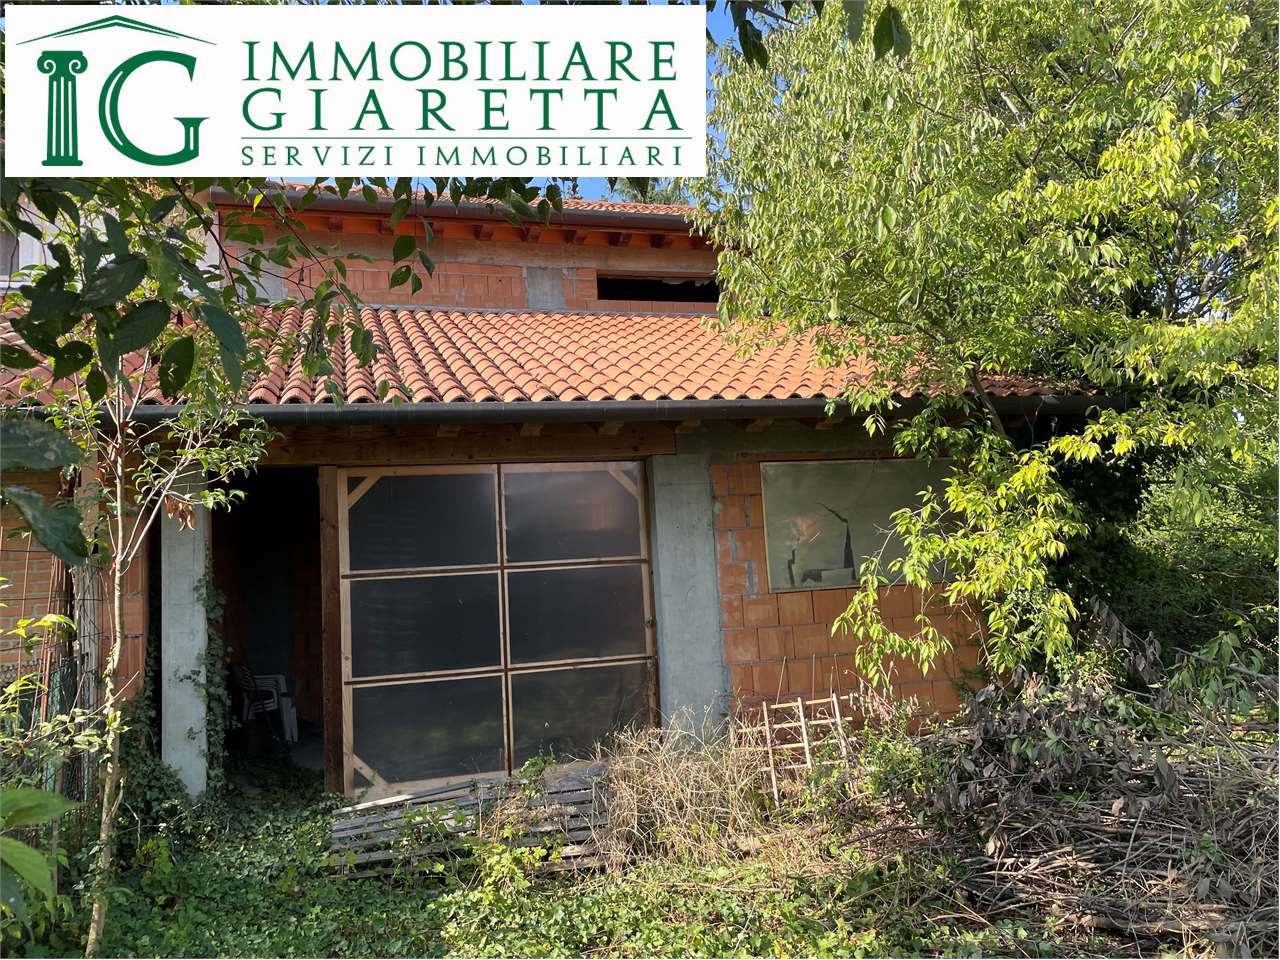 Villa in vendita a Tezze sul Brenta, 4 locali, zona nati, prezzo € 95.000 | PortaleAgenzieImmobiliari.it